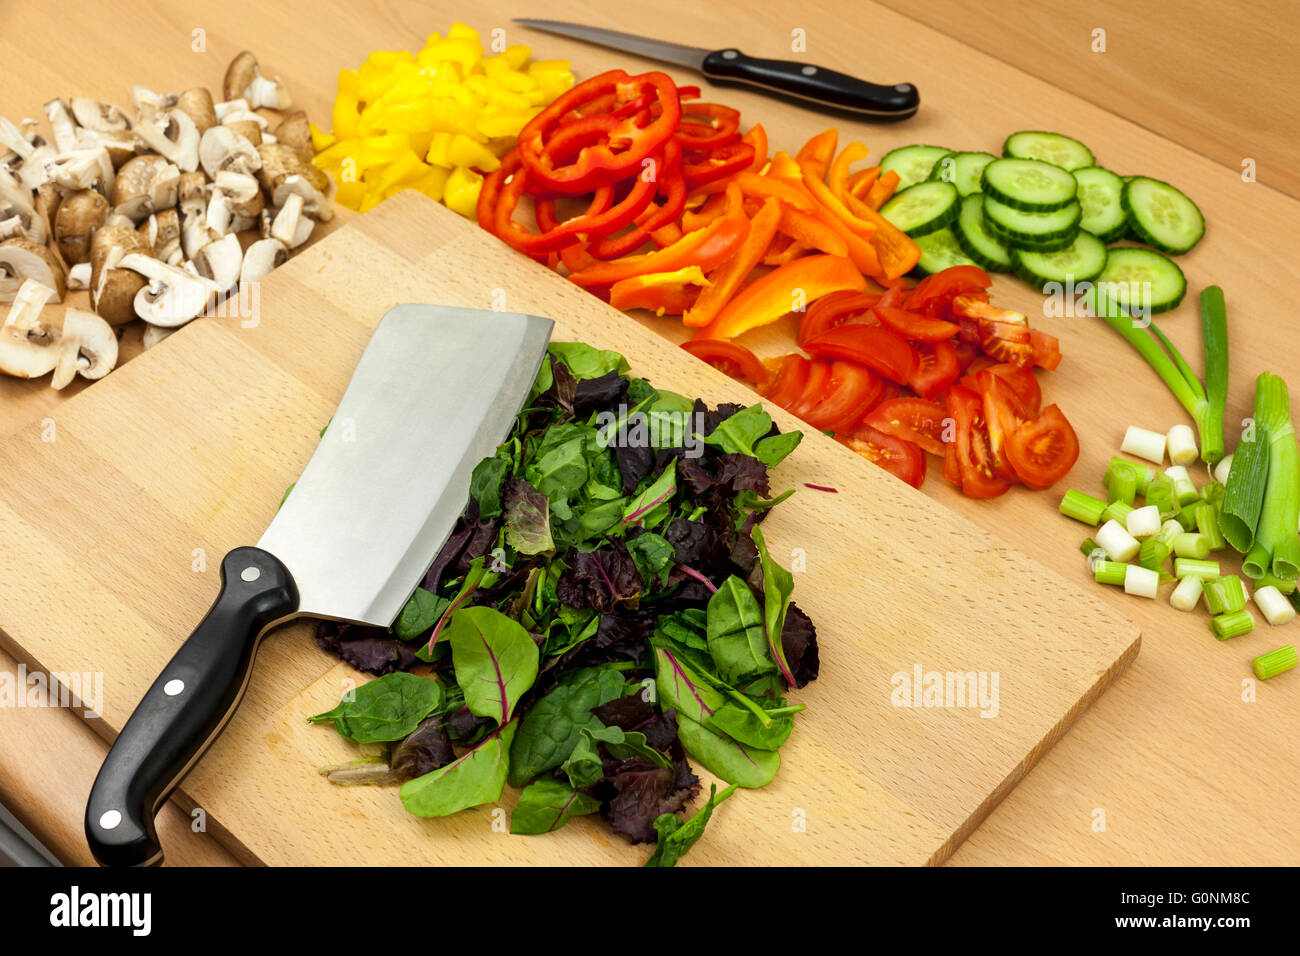 Cleaver coltello posa sulla cima di alcune appena tagliate insalata babyleaf su di un tagliere a parte una selezione di altri ortaggi e legumi Foto Stock